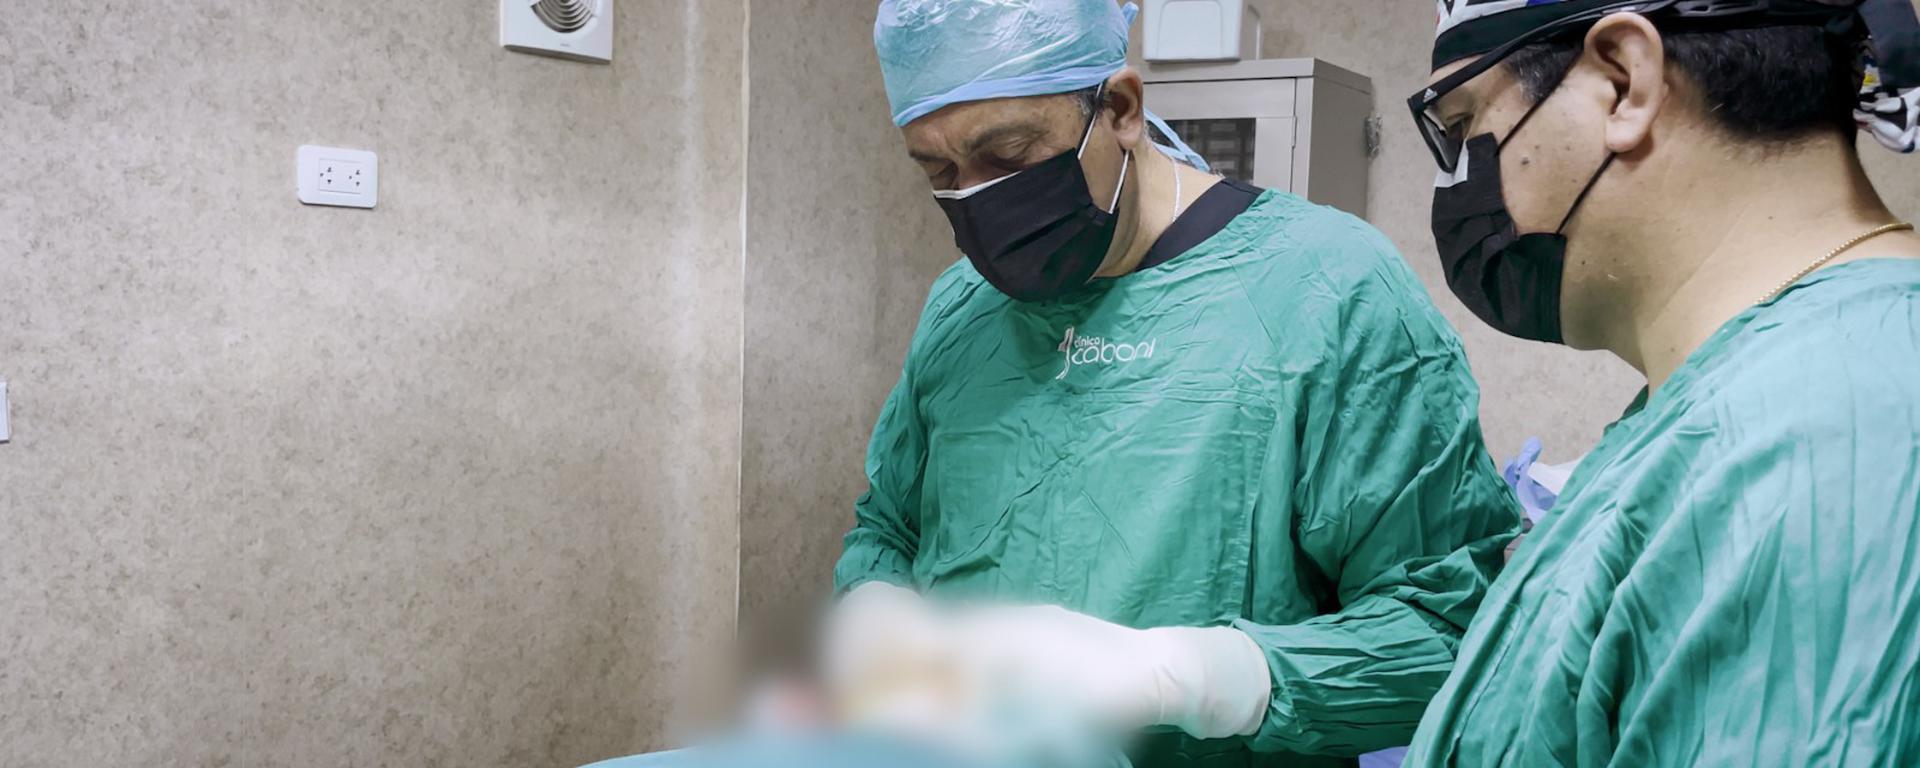 Operaciones que reconstruyen heridas físicas y psicológicas: 70 mujeres víctimas de violencia recibieron cirugías